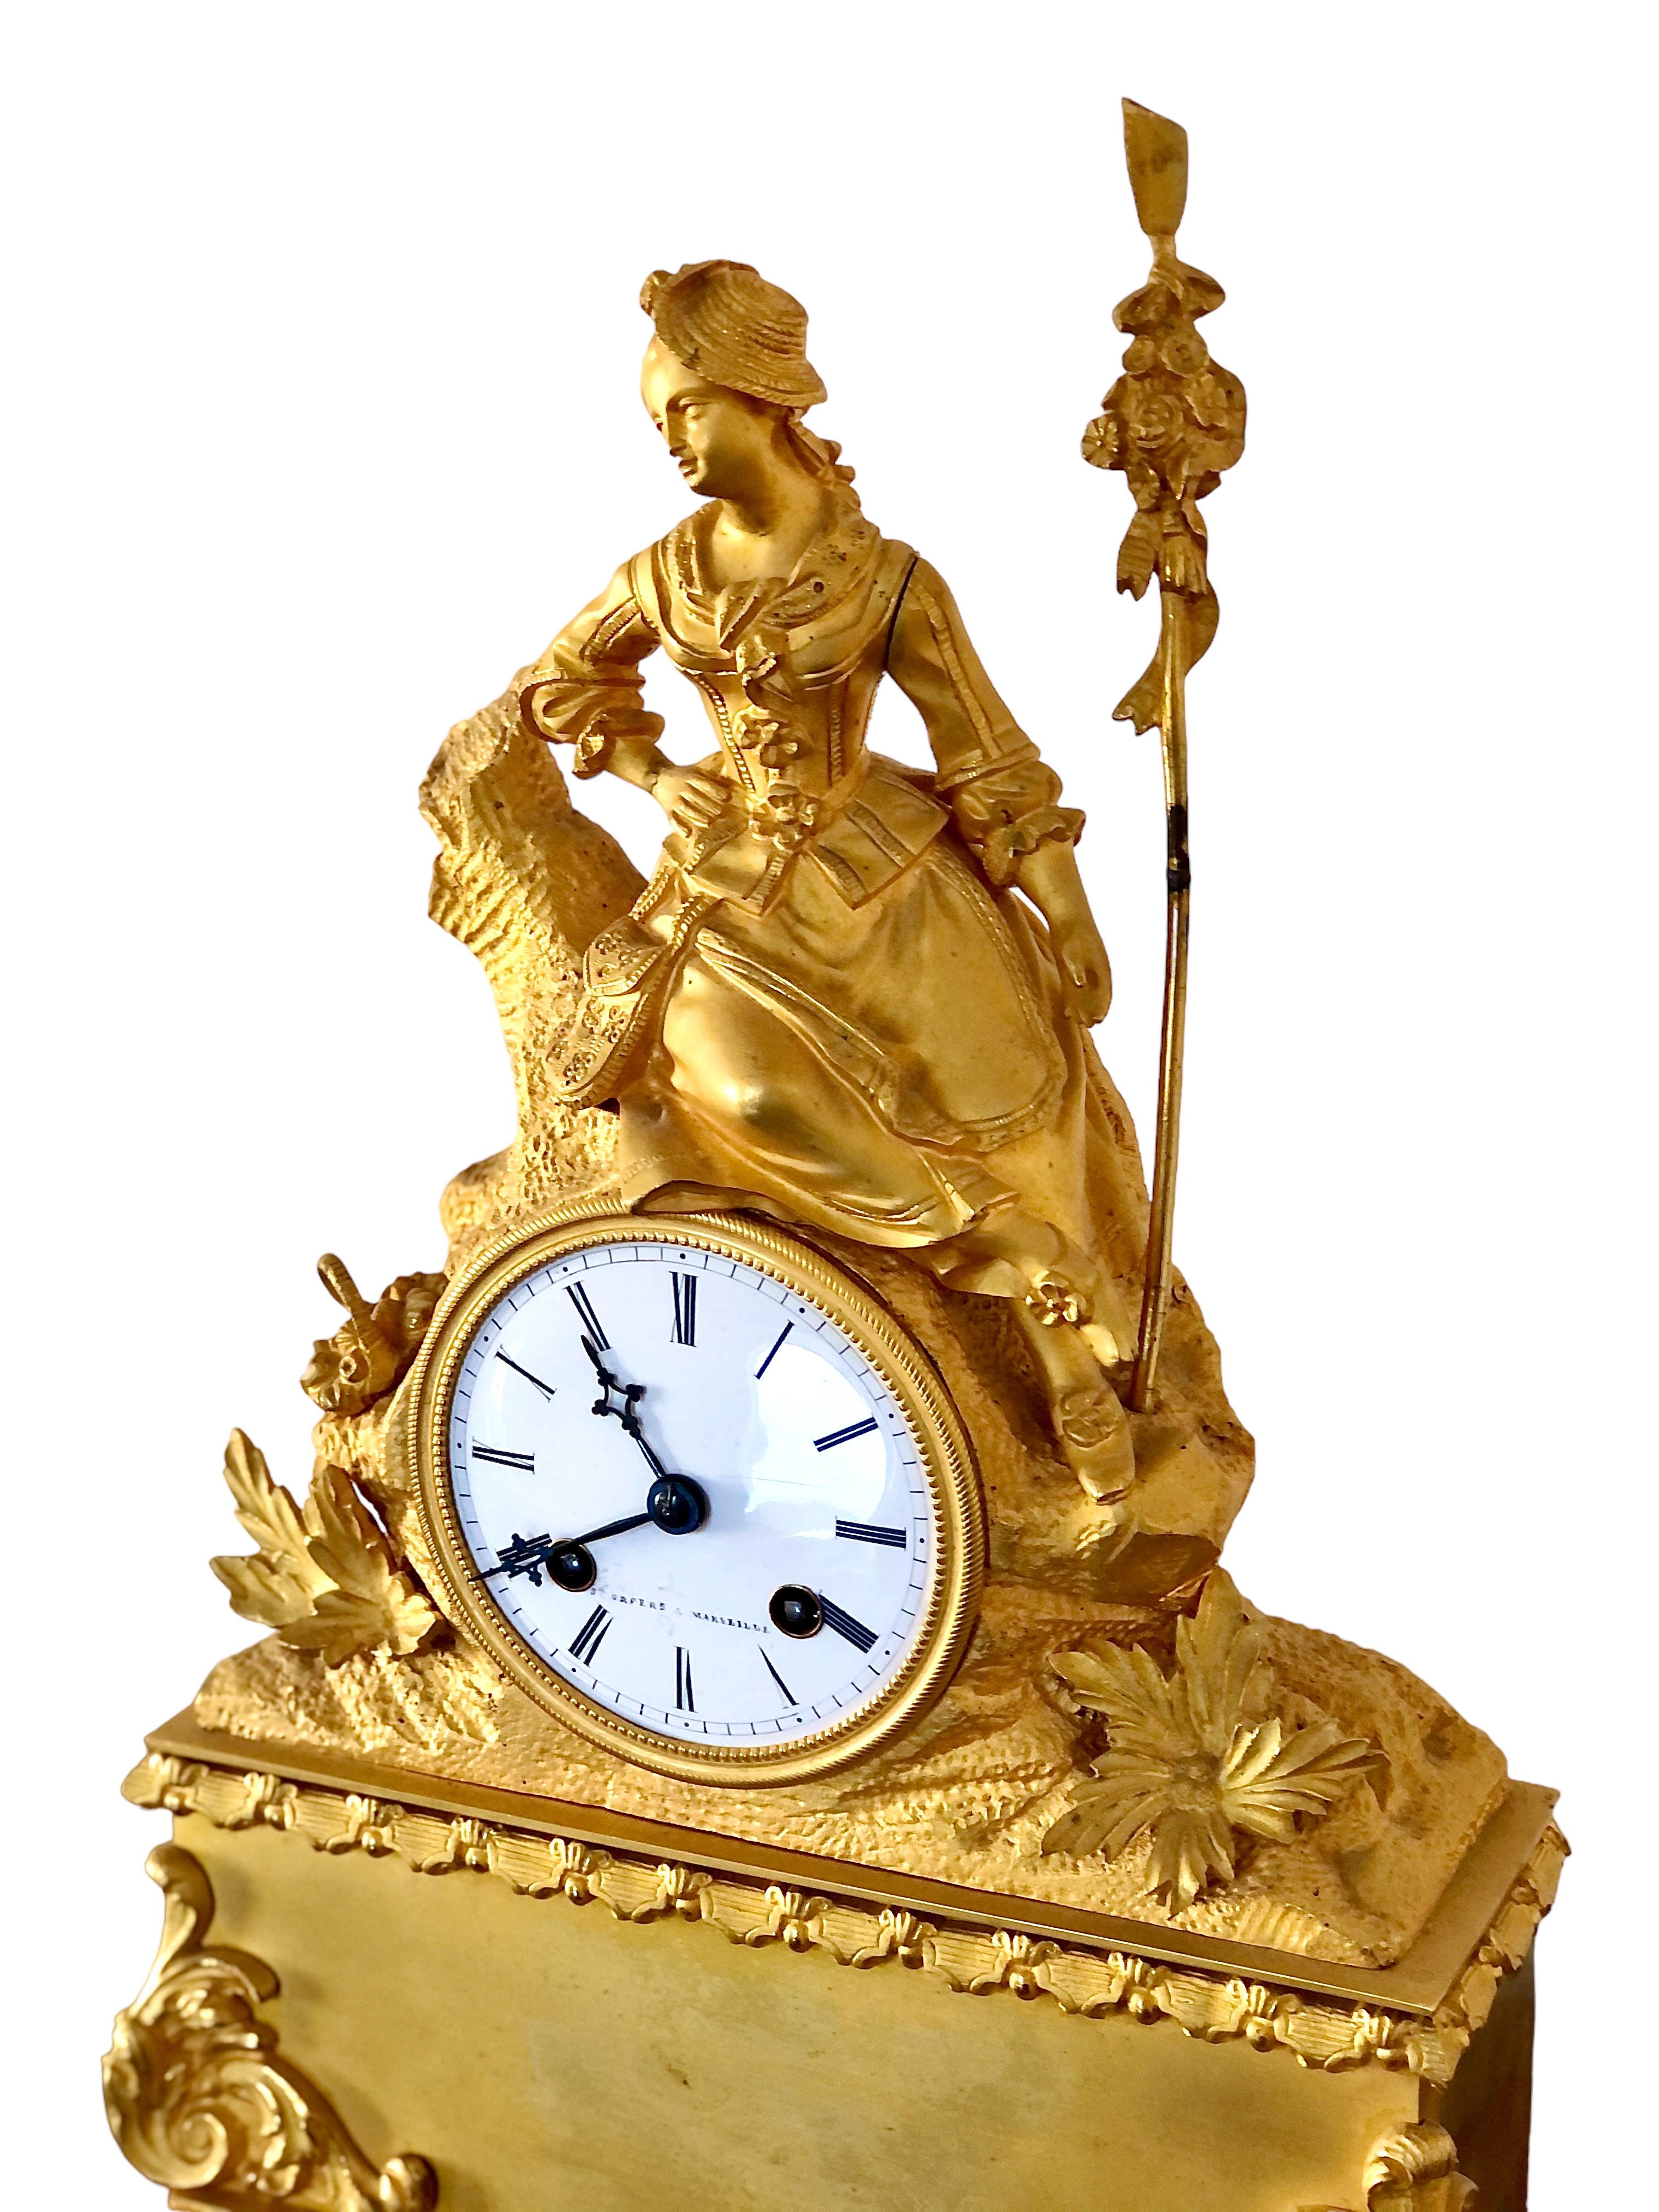 Eine hervorragende Qualität 19. Jahrhundert Französisch Bronze vergoldet Kaminsims Uhr, behält seine ursprüngliche Glaskuppel, und geschmückt mit einem fein detaillierten rustikalen weiblichen Figur in der Zeit Kleid, auf einem Baumstumpf von